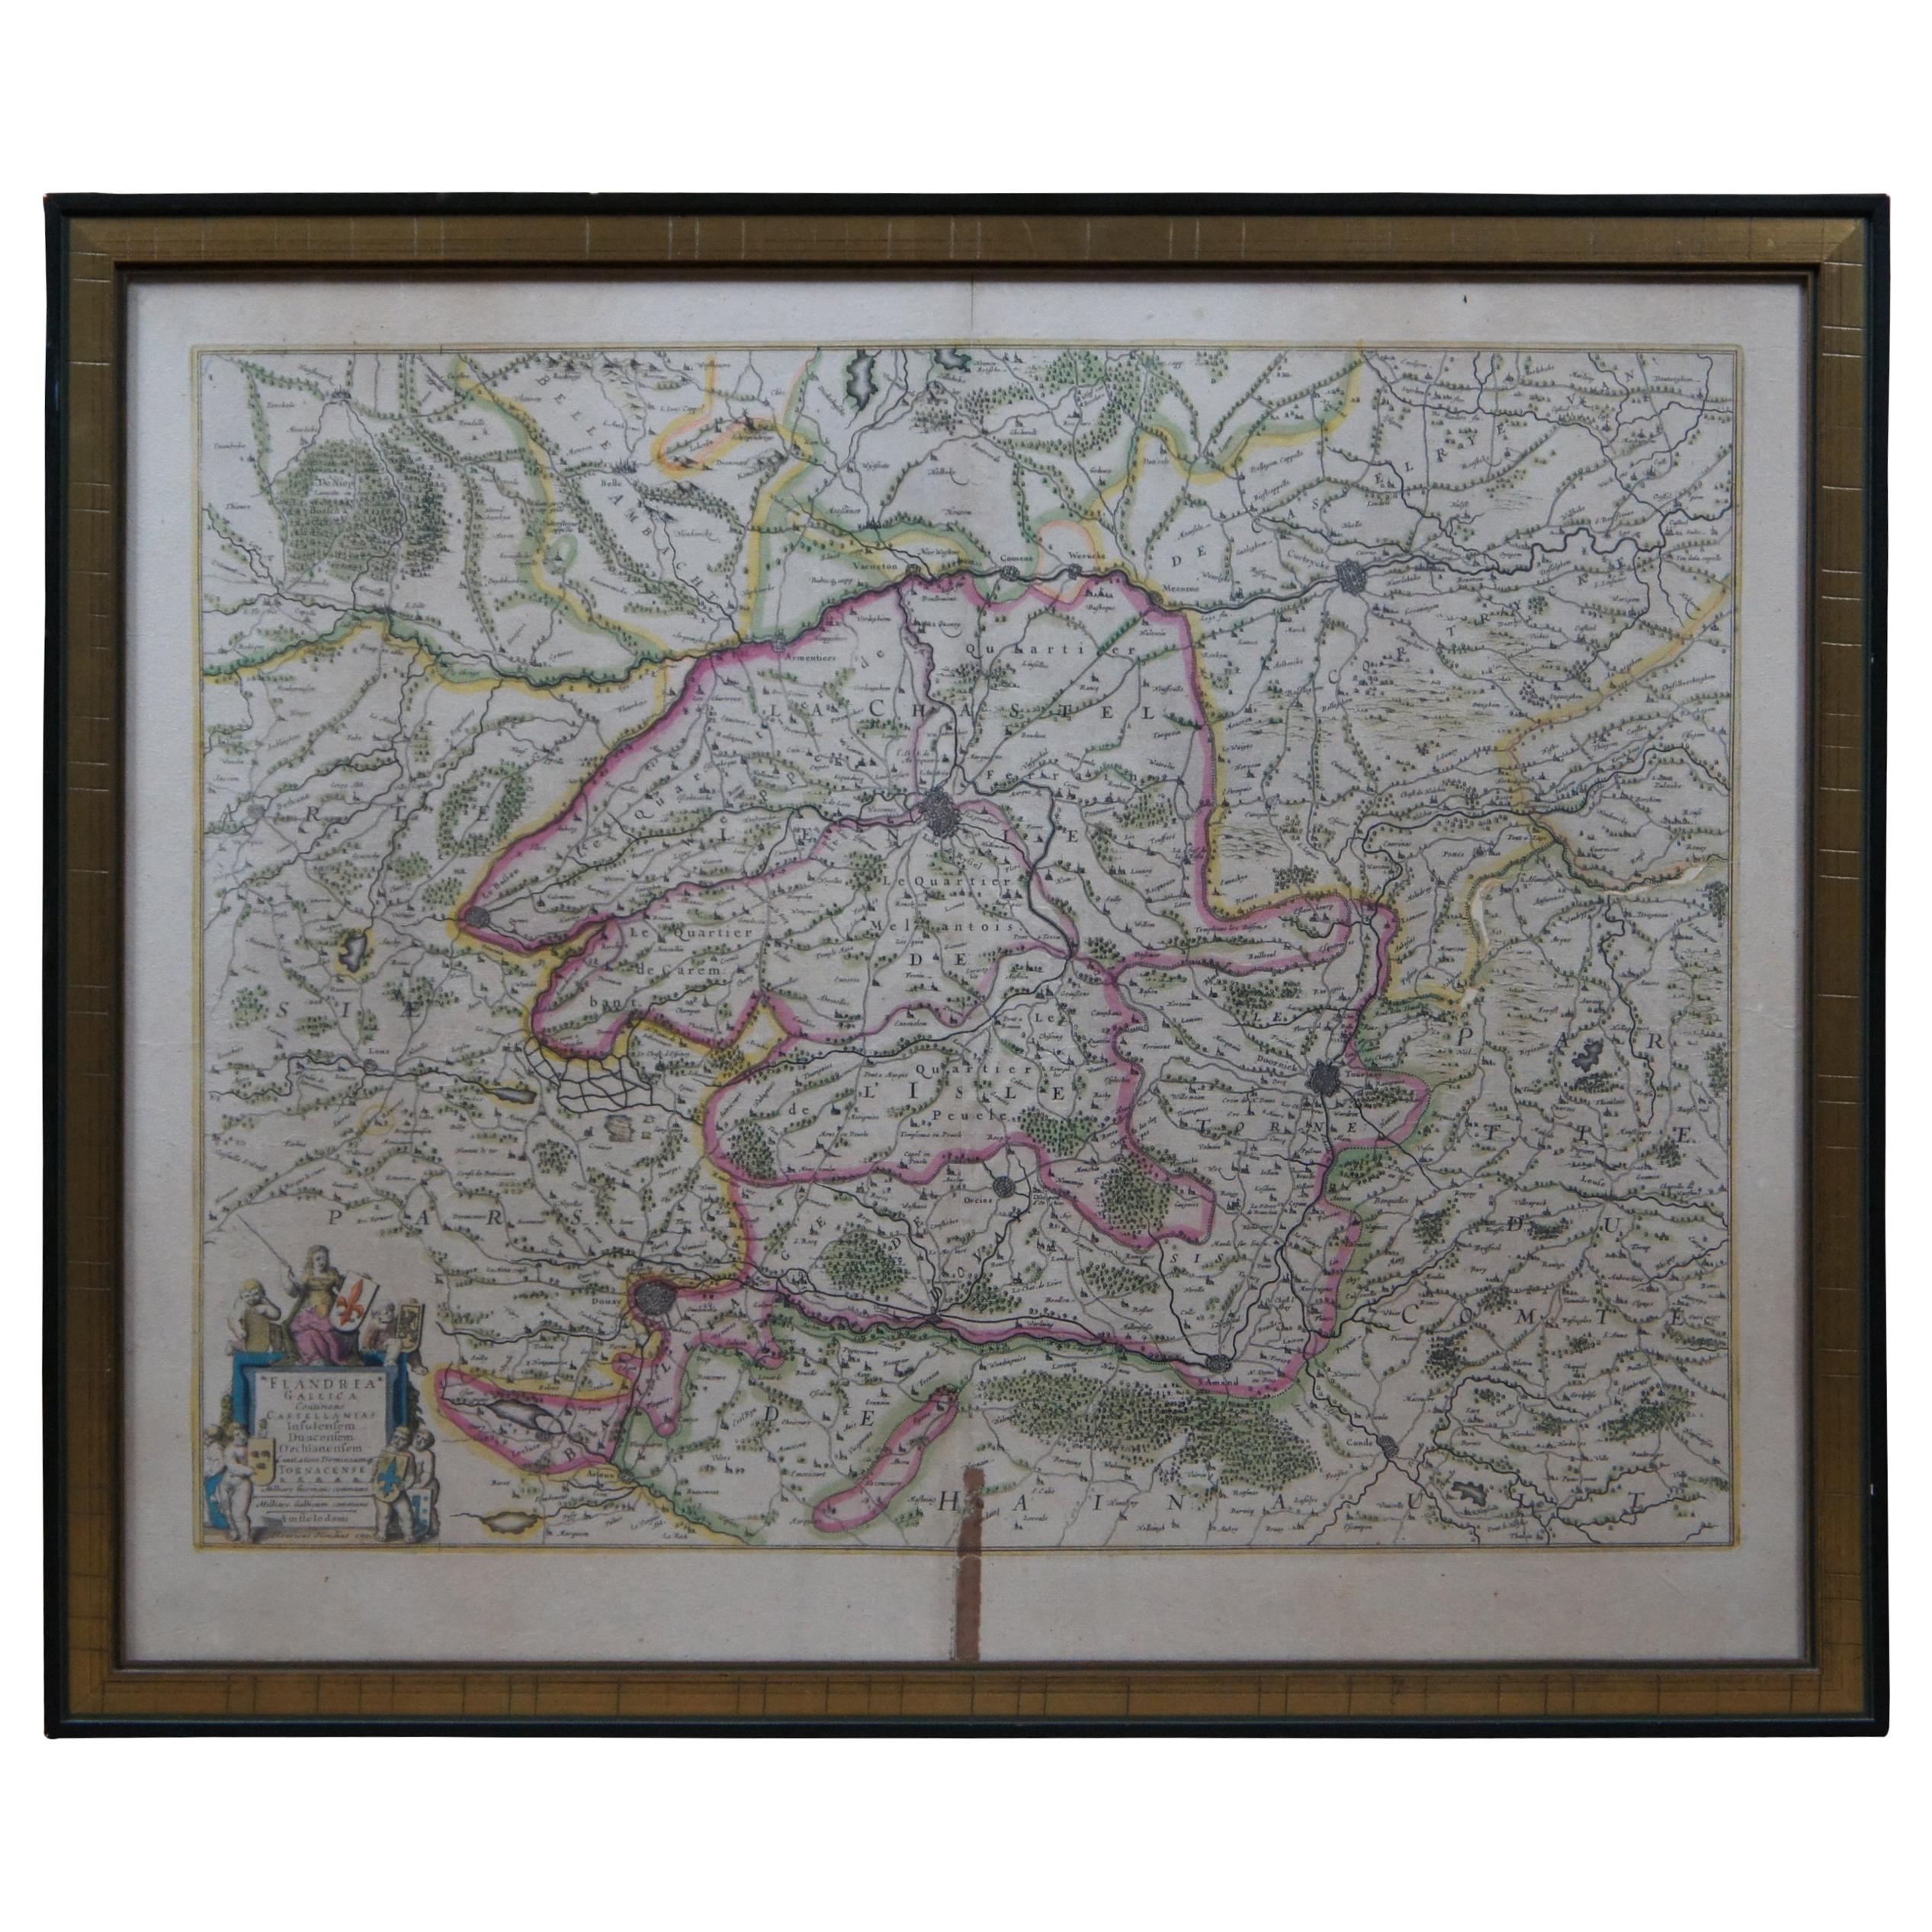 Antique 1630 Colored Belgium Map Flandria Gallica Flanders Henricus Hondius